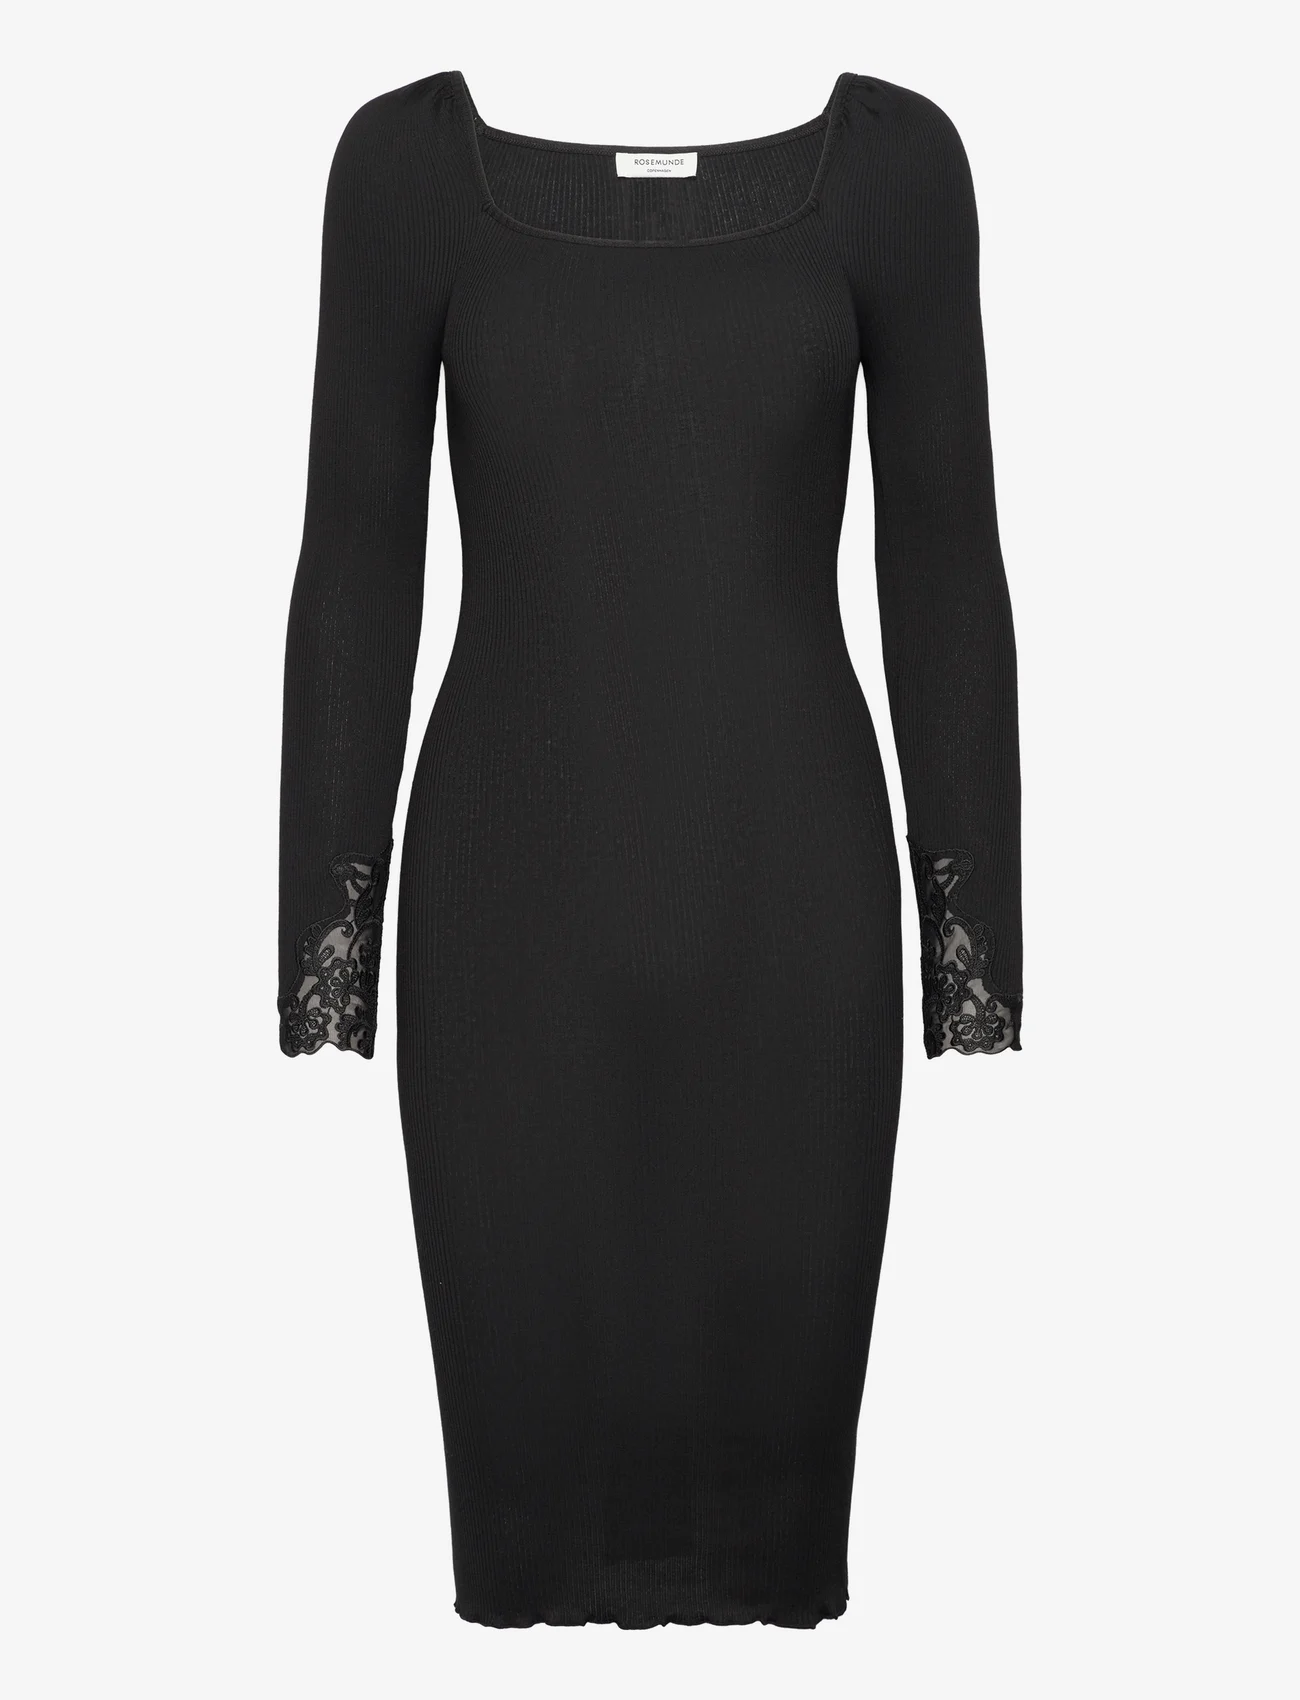 Rosemunde - Silk dress w/ lace - tettsittende kjoler - black - 0